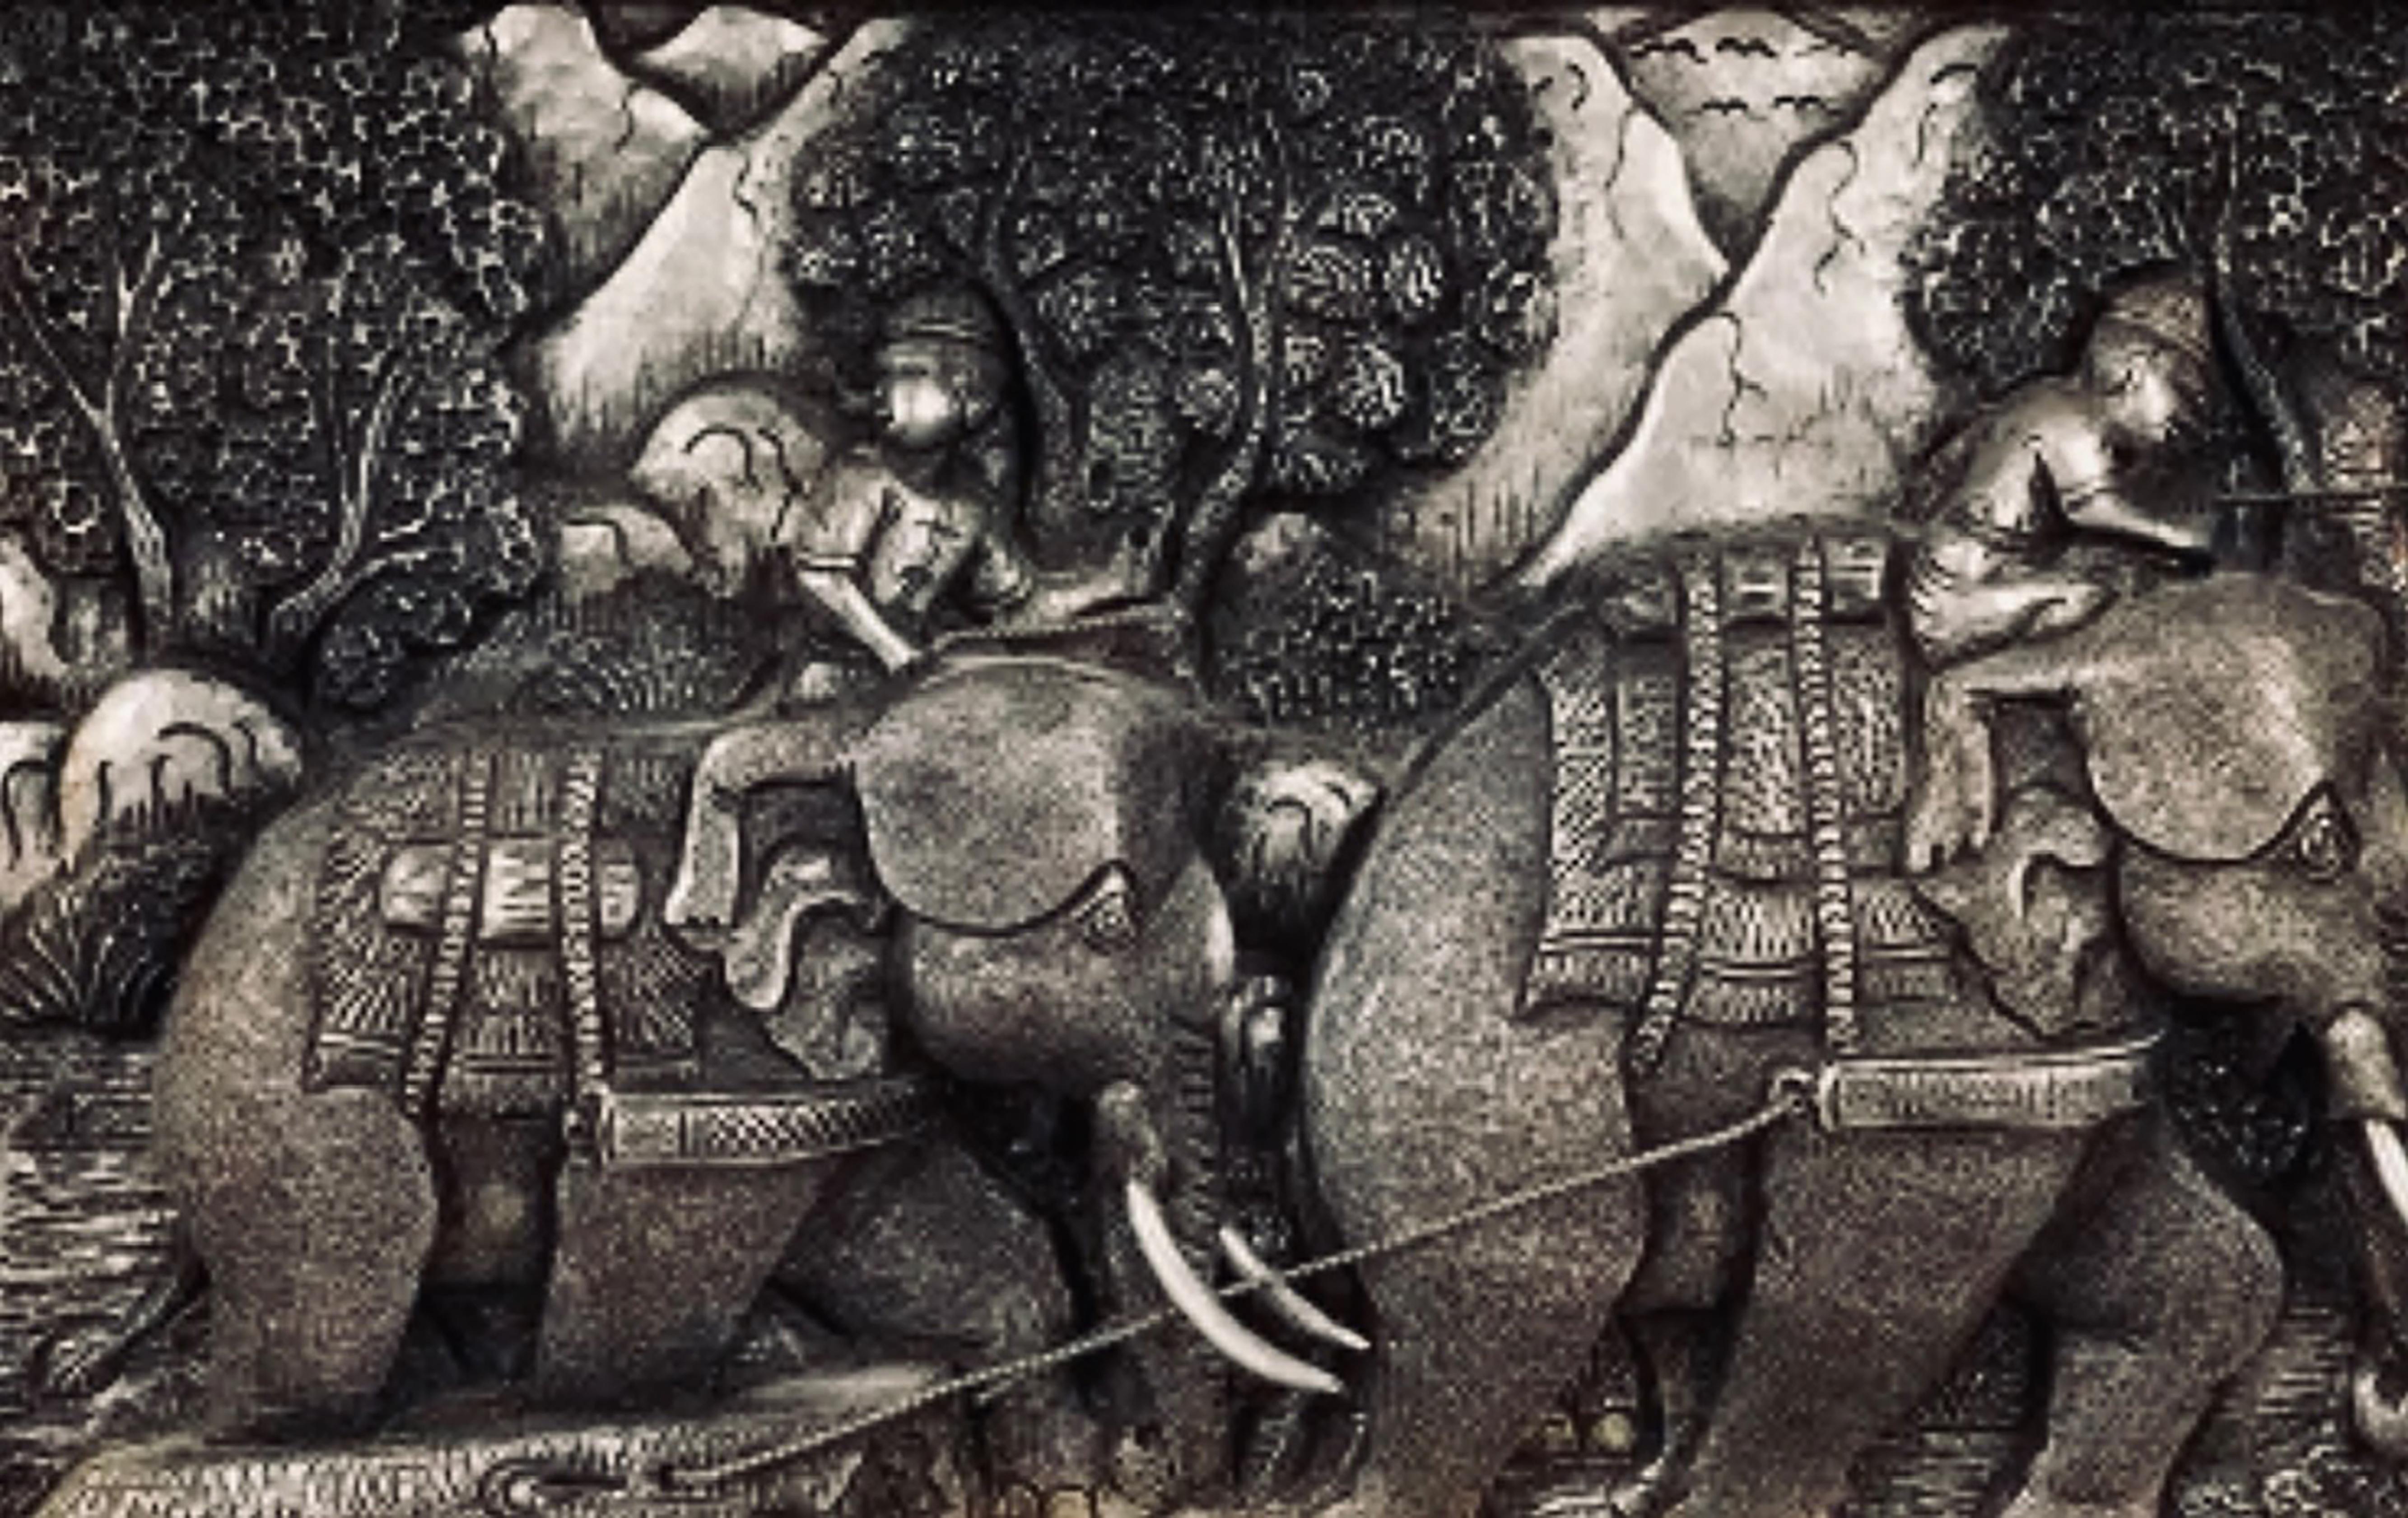 776 Sculpture chinoise encadrée de fruits en argent et étain.
Avec des scènes d'éléphants magistralement réalisées.
Dimensions : 16